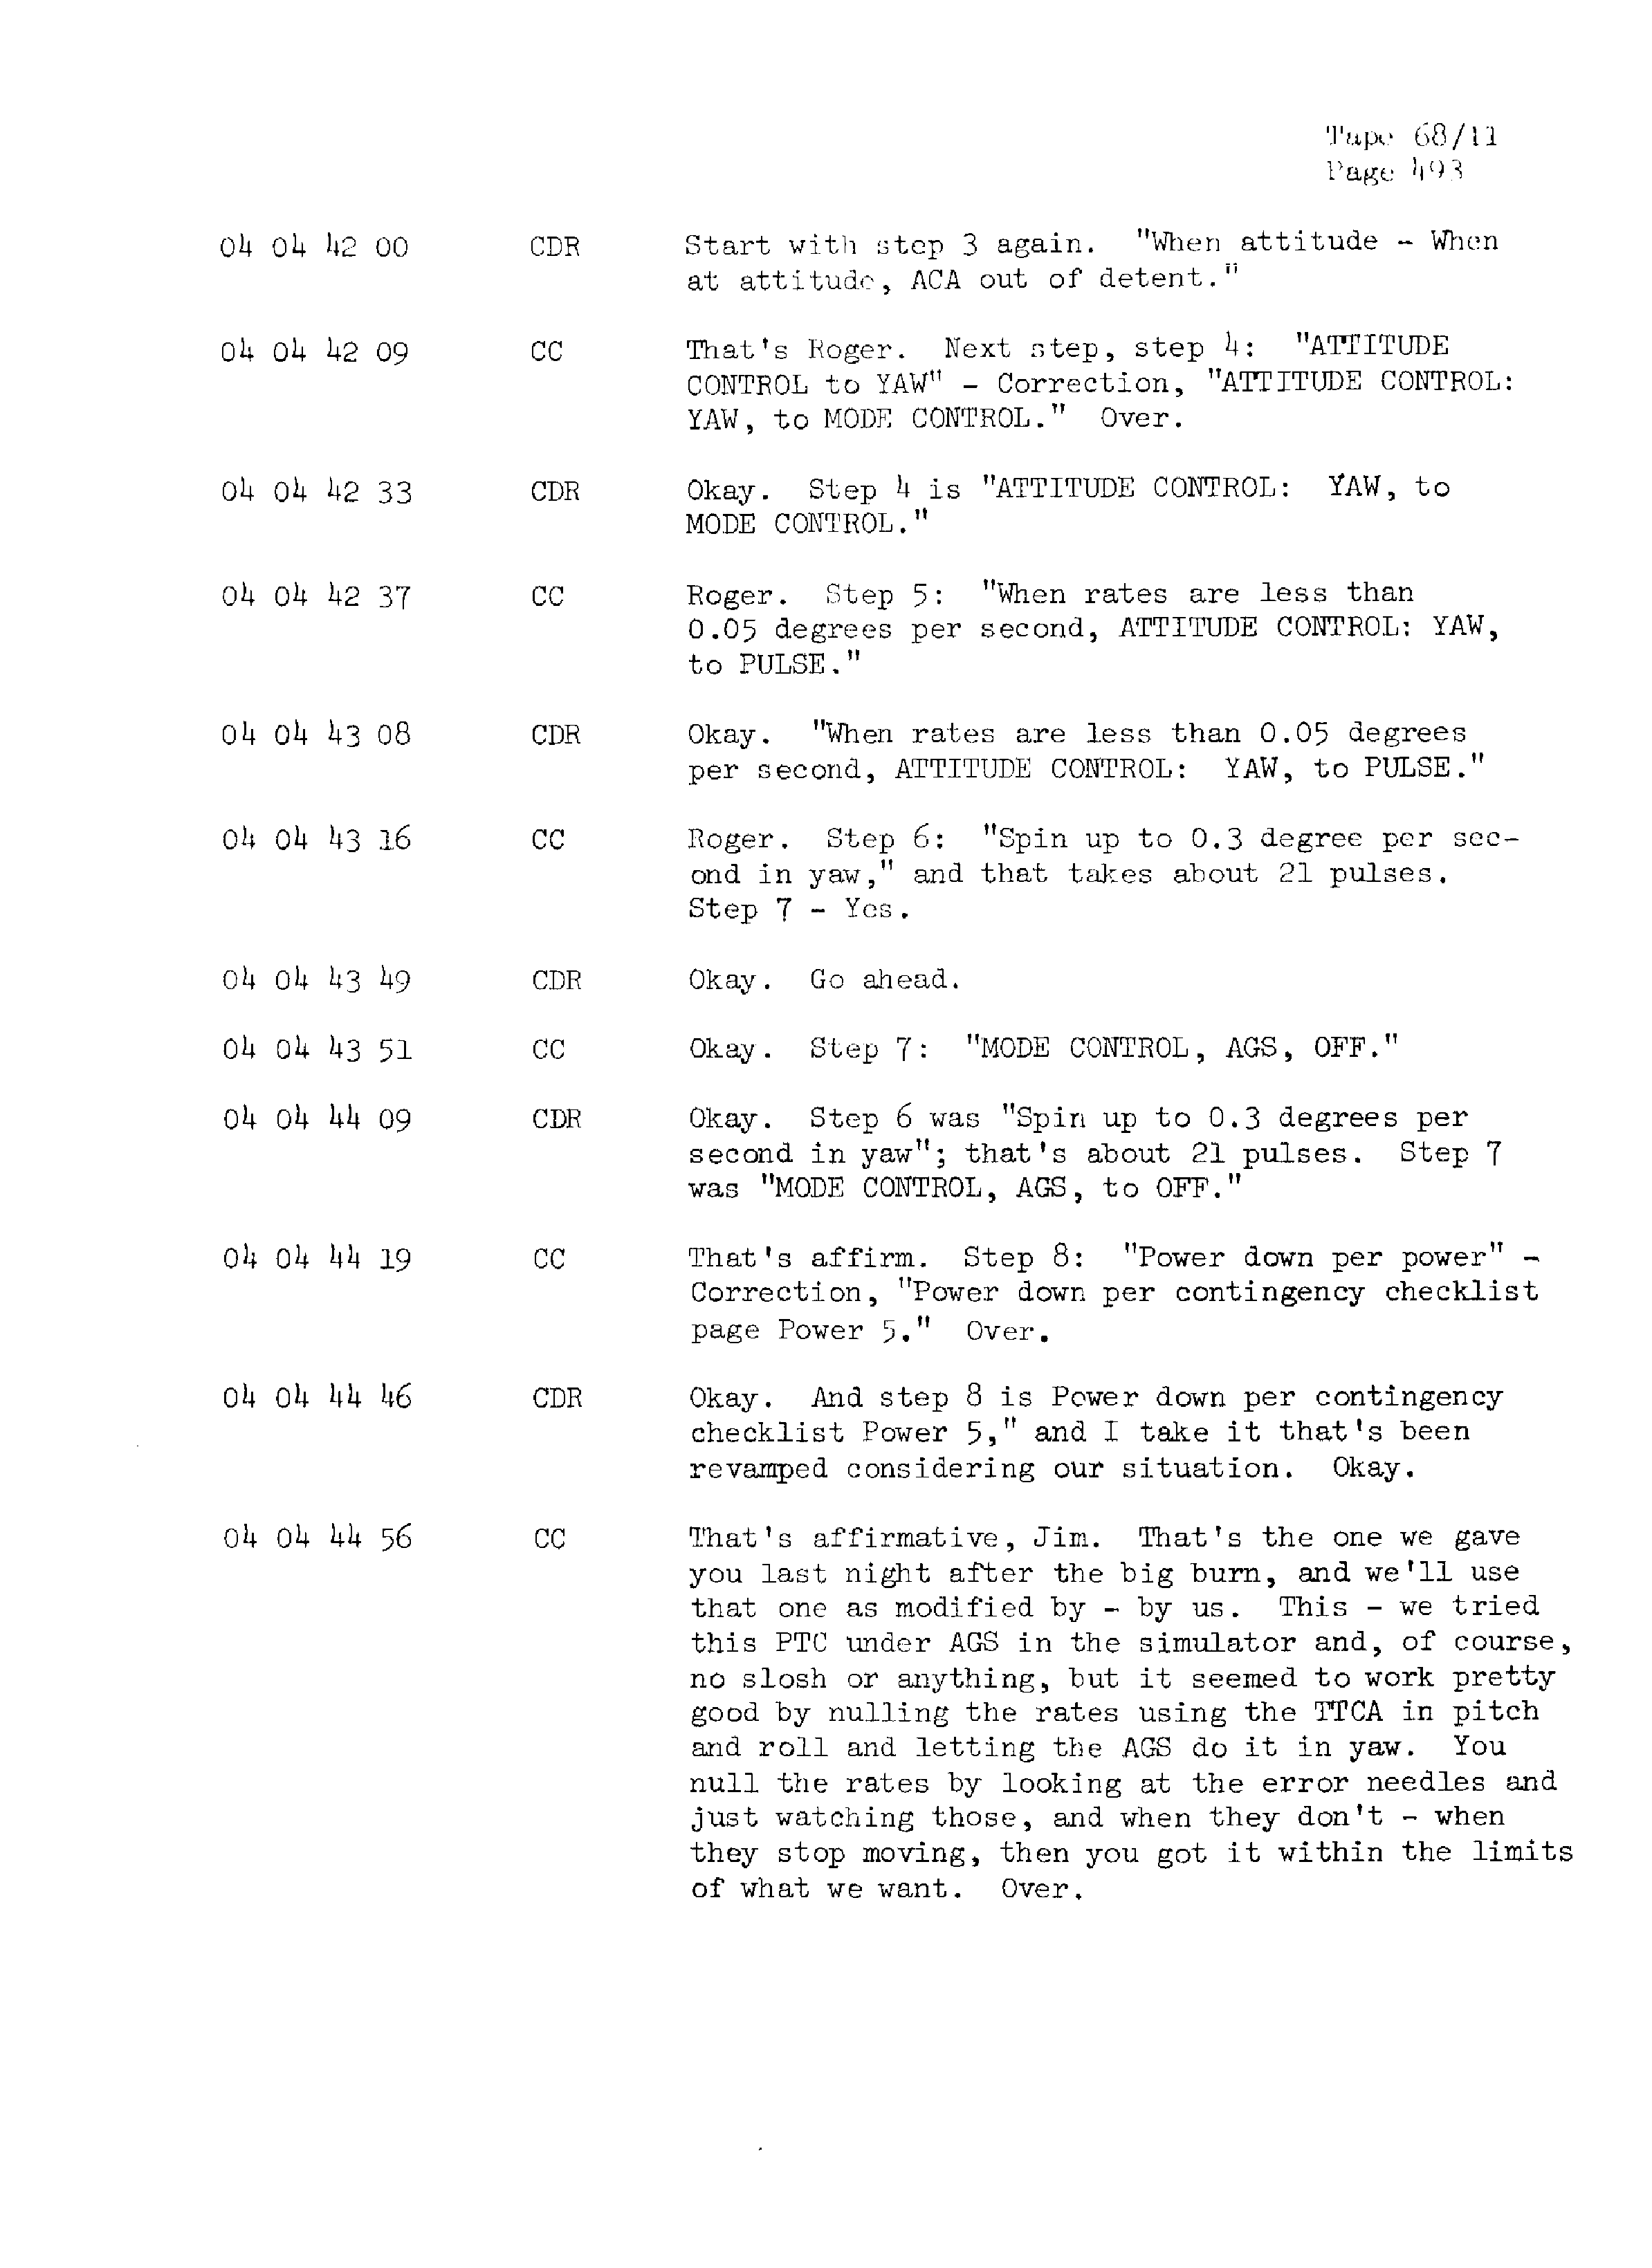 Page 500 of Apollo 13’s original transcript